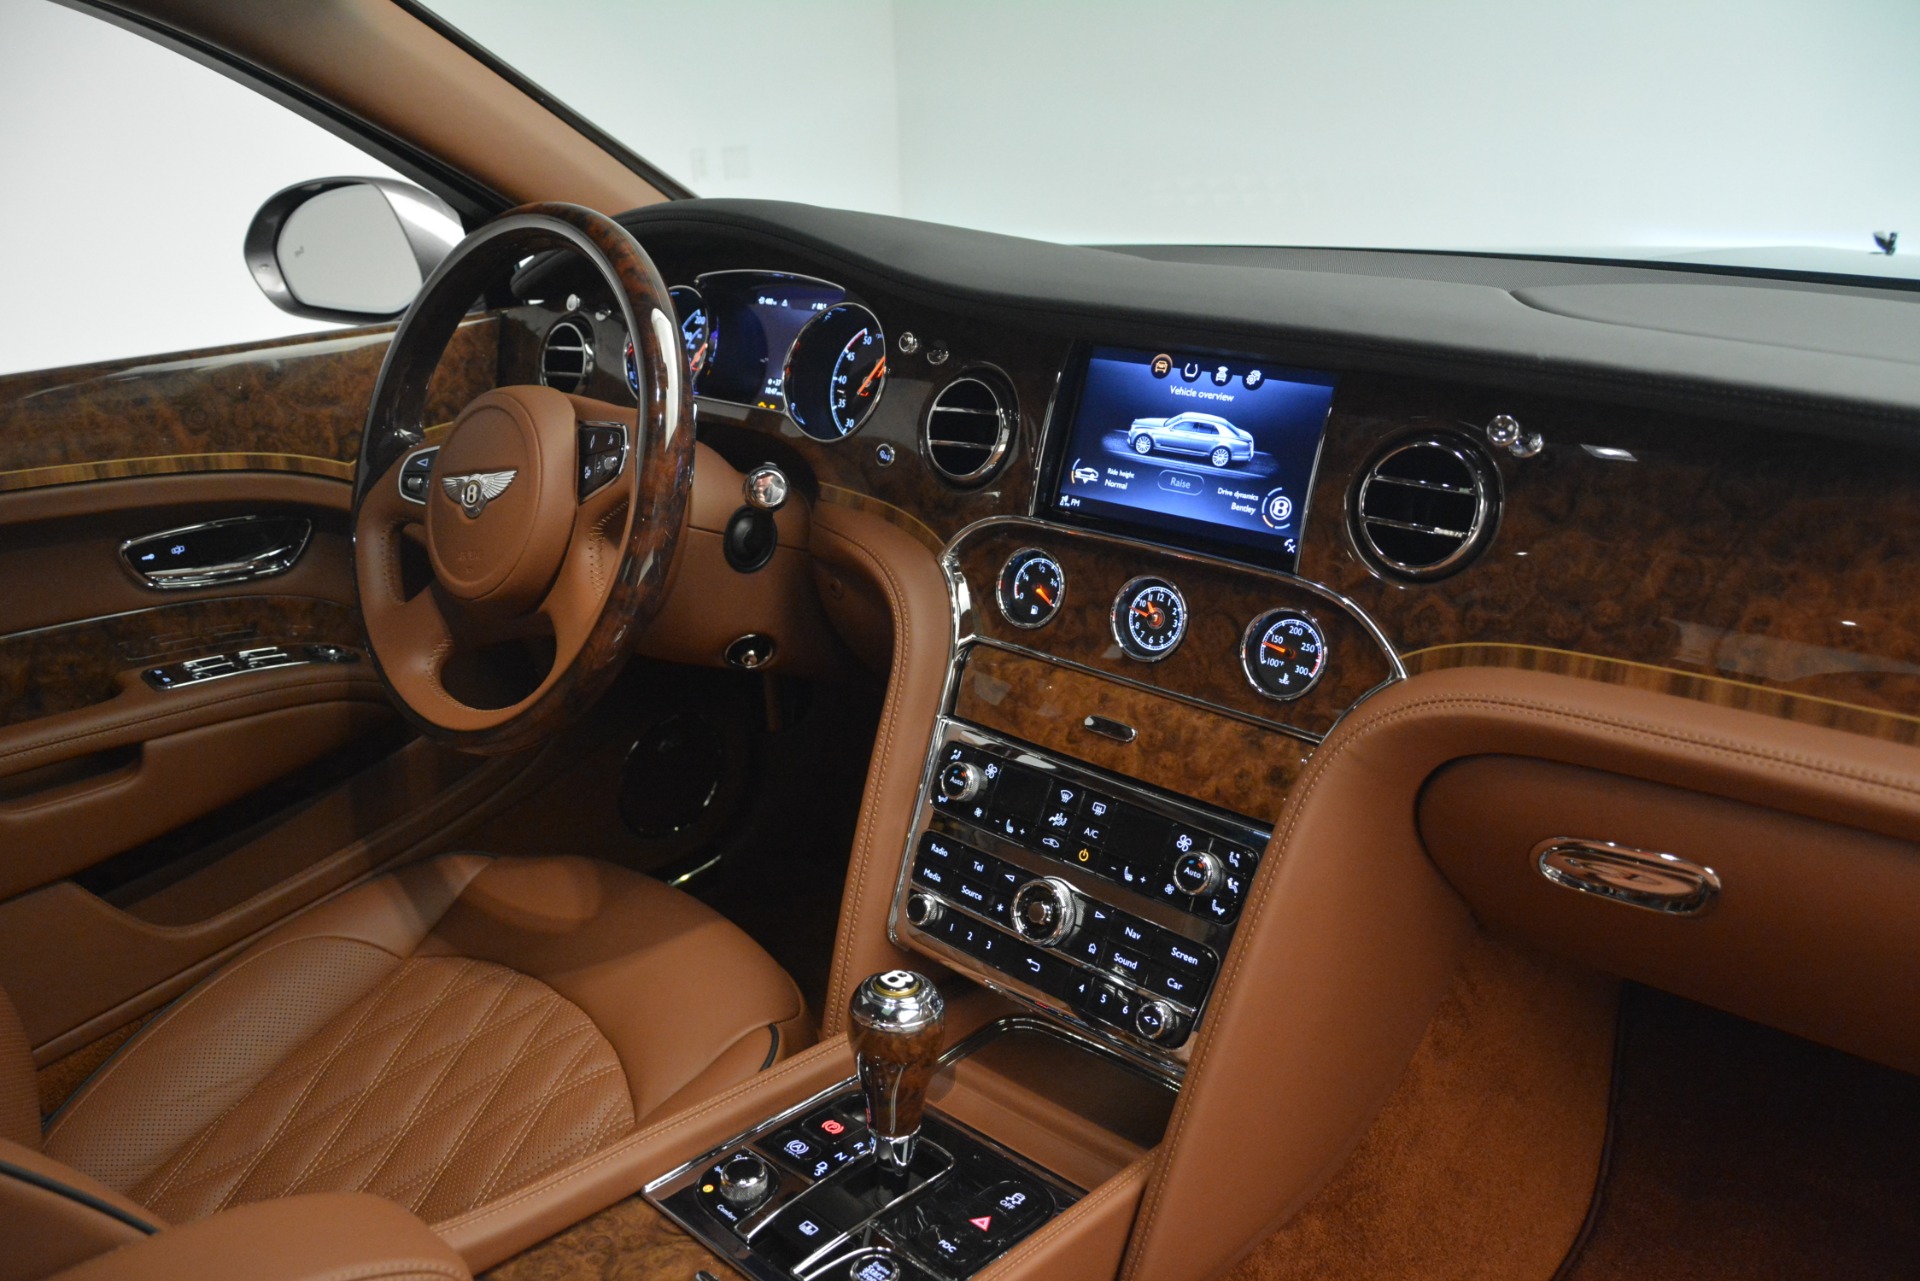 2017 Bentley Mulsanne Interior | Autoblog - YouTube